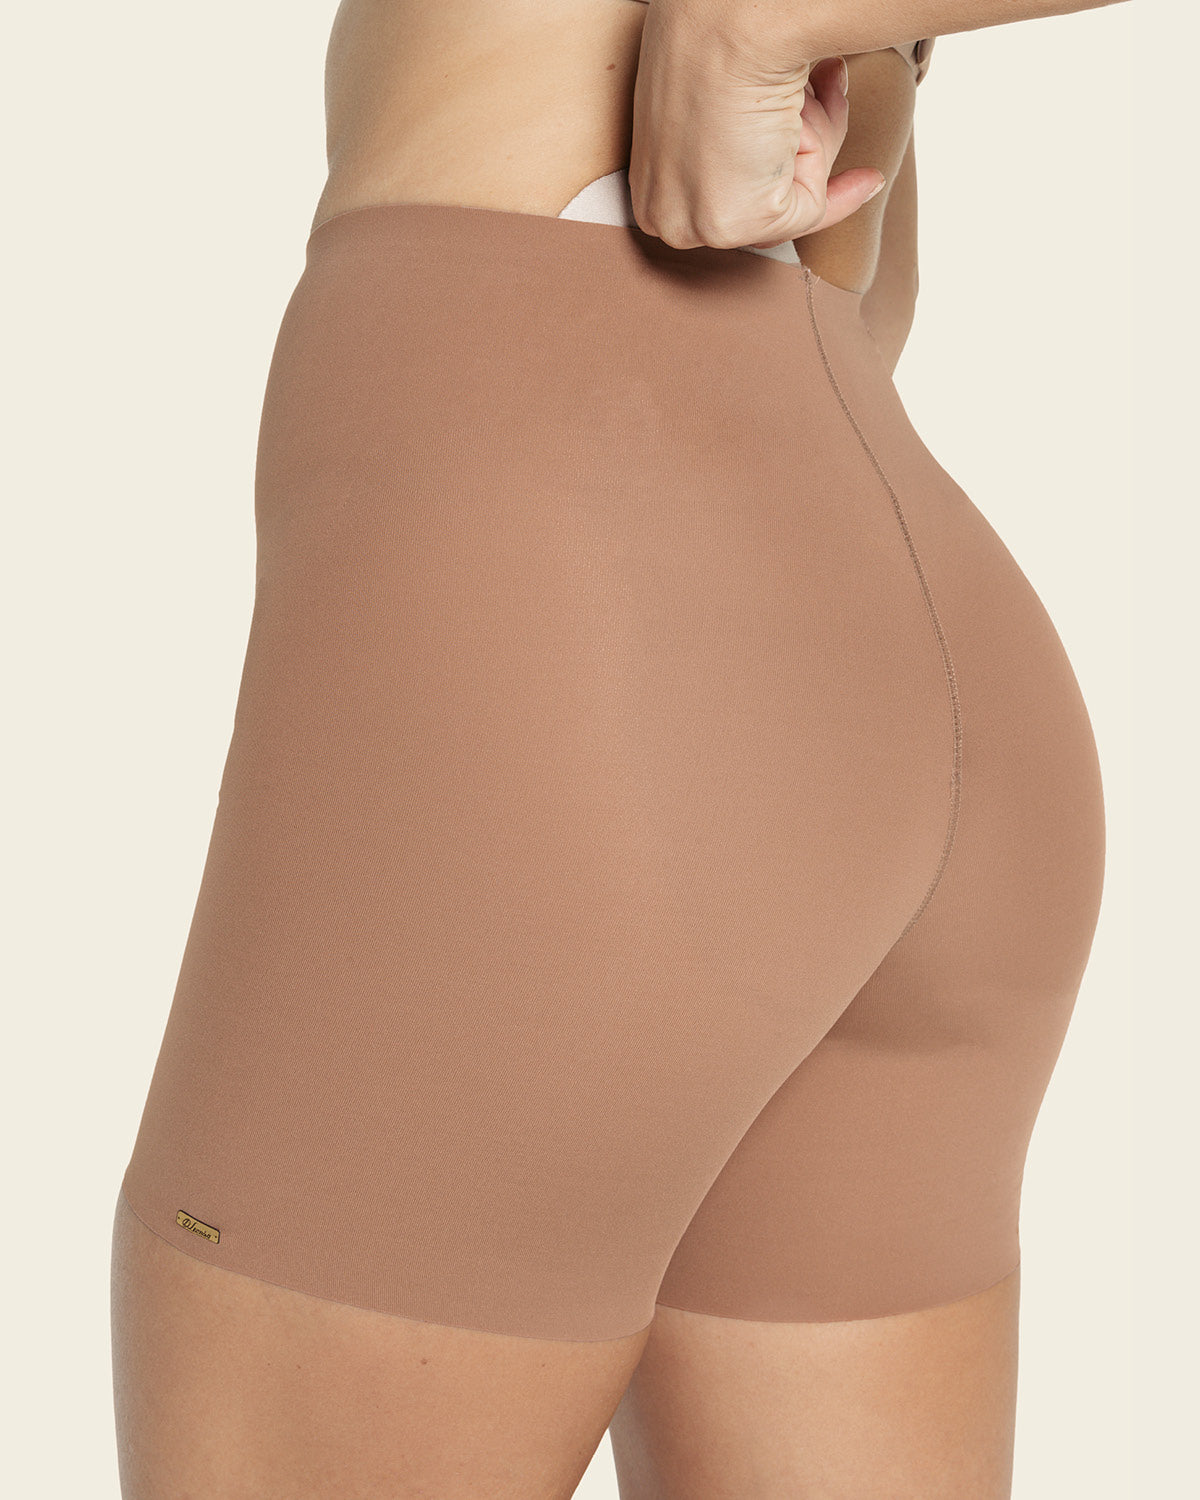 Plus Size Shapewear for Women's Body Shaper Butt Lifter Underwear Booty  Lift Tummy Shapers - China Butt Lifter and Butt Lifter Shaper price